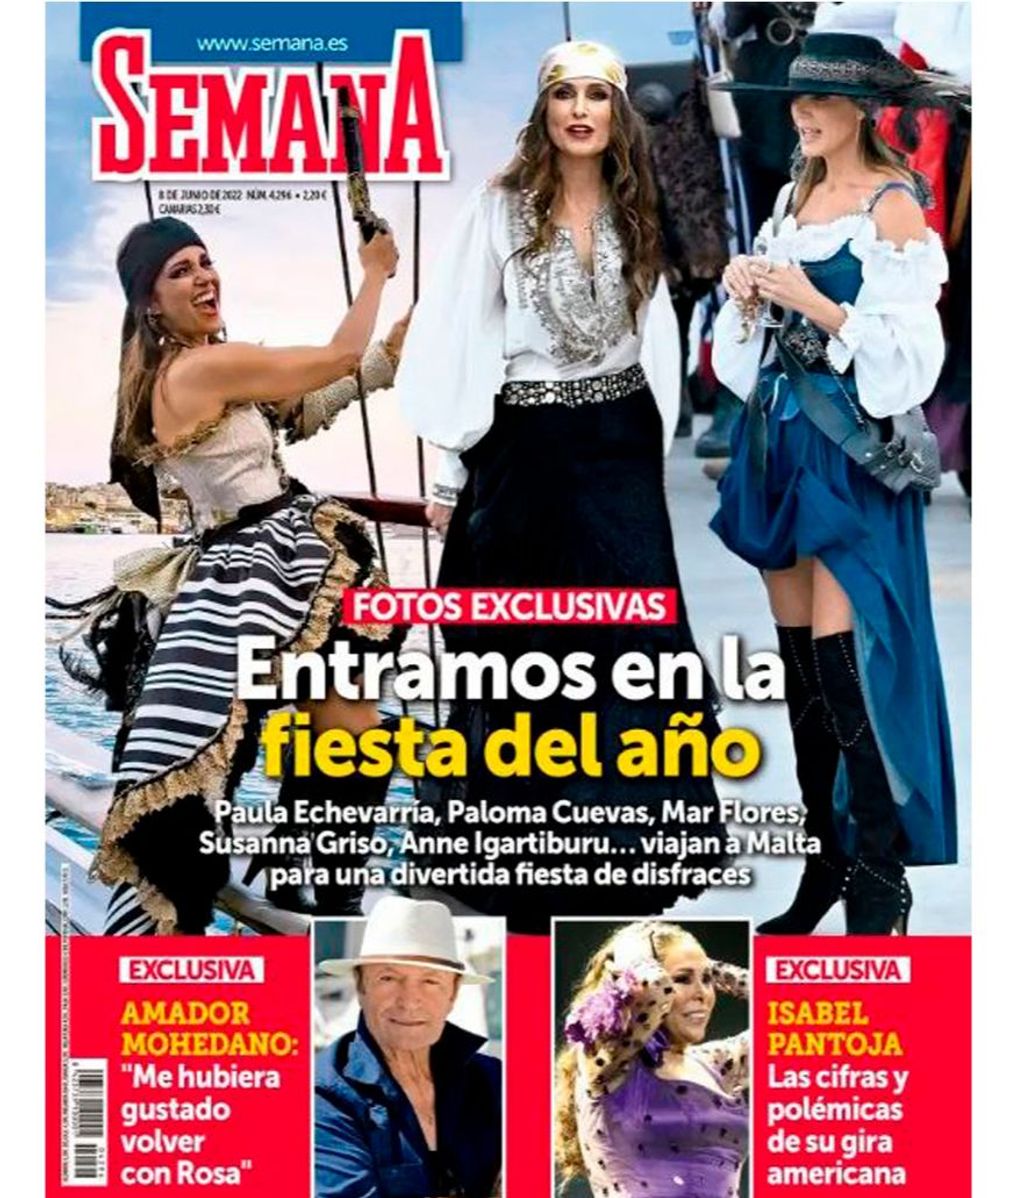 La confesión de Amador Mohedano sobre Rosa Benito en su entrevista para la revista 'Semana'